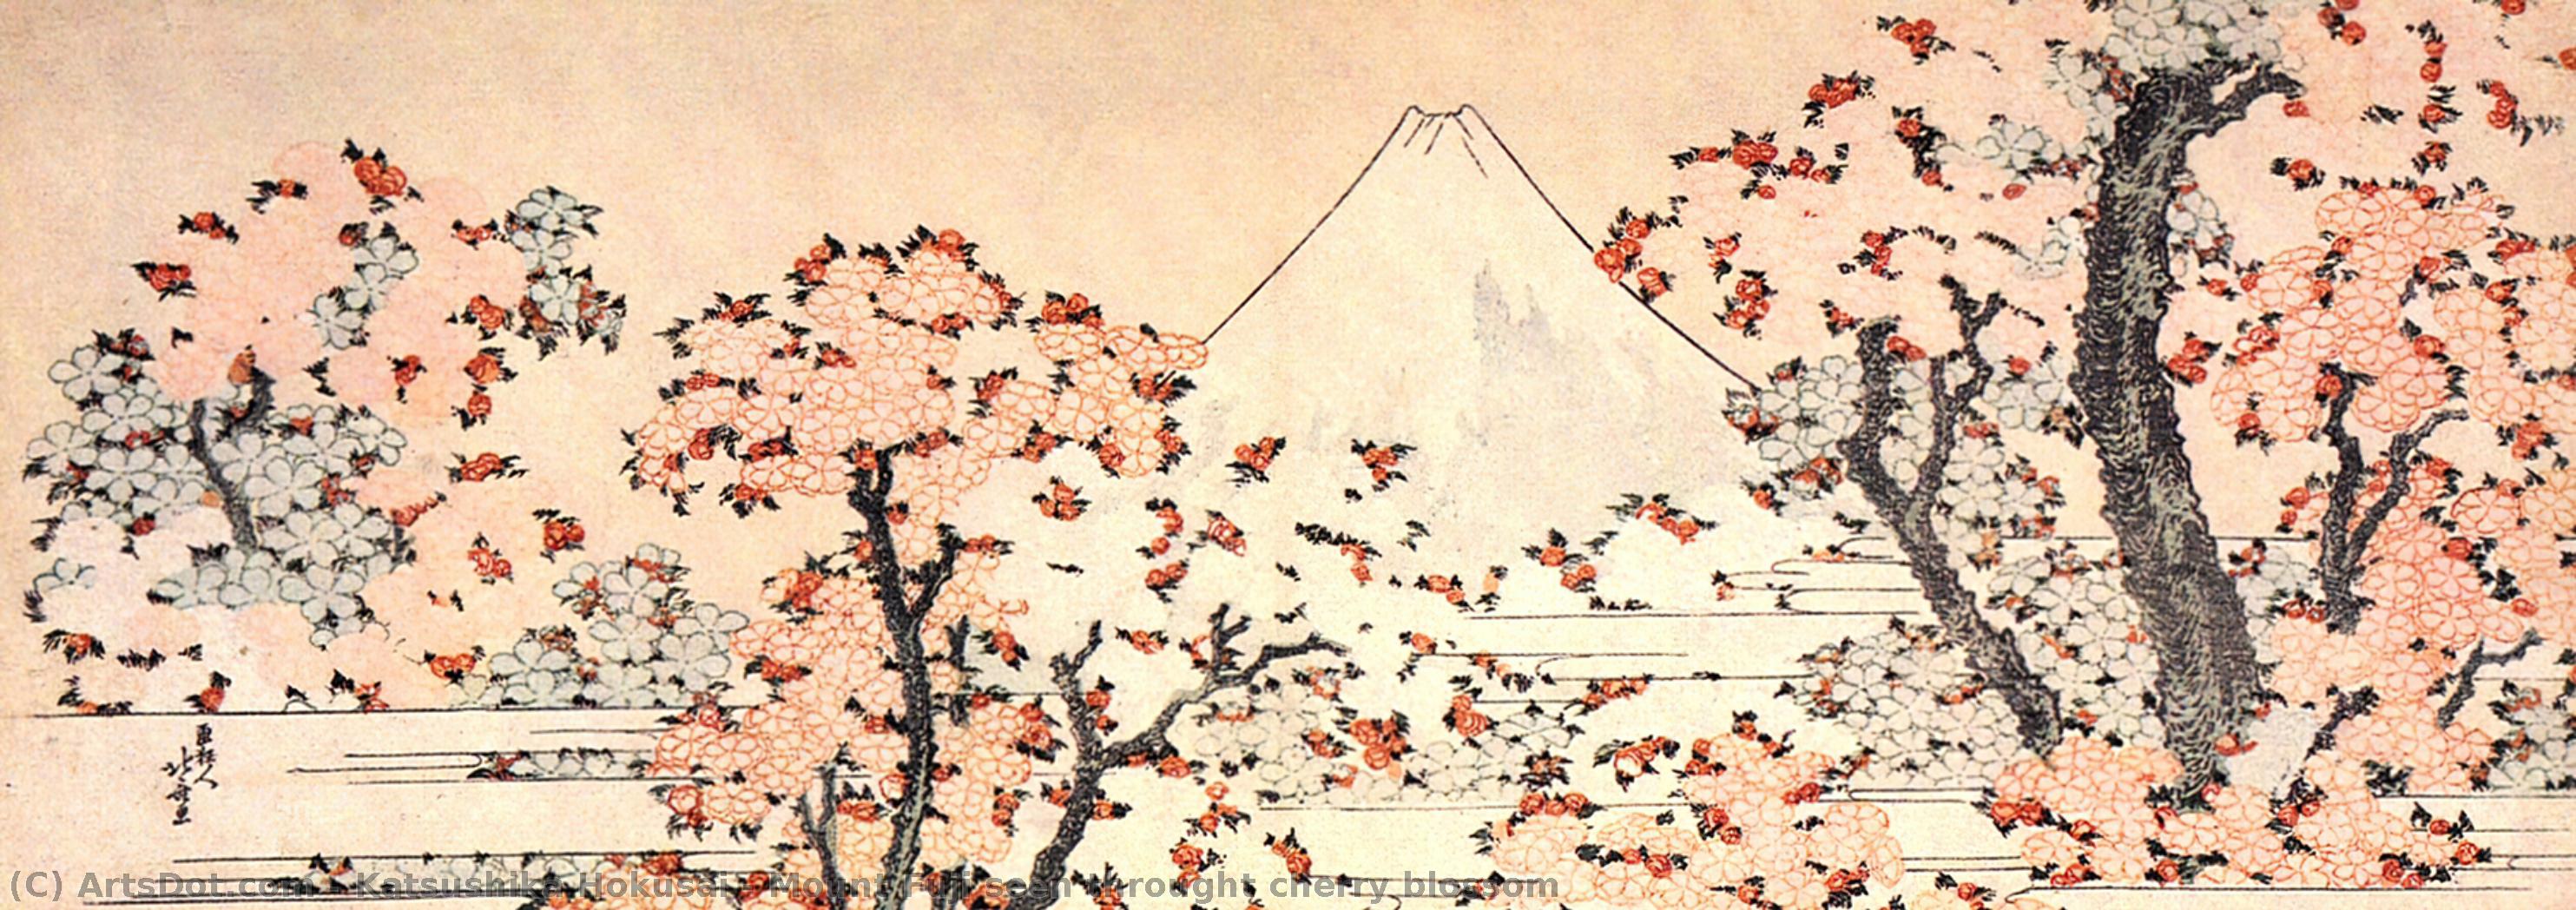 Координаты сакуры. Кацусика Хокусай Сакура. Кацусика Хокусай Сакура и Фудзи. Сакура укие э. Кацусика Хокусай гора Фудзи с цветущими вишневыми деревьями.